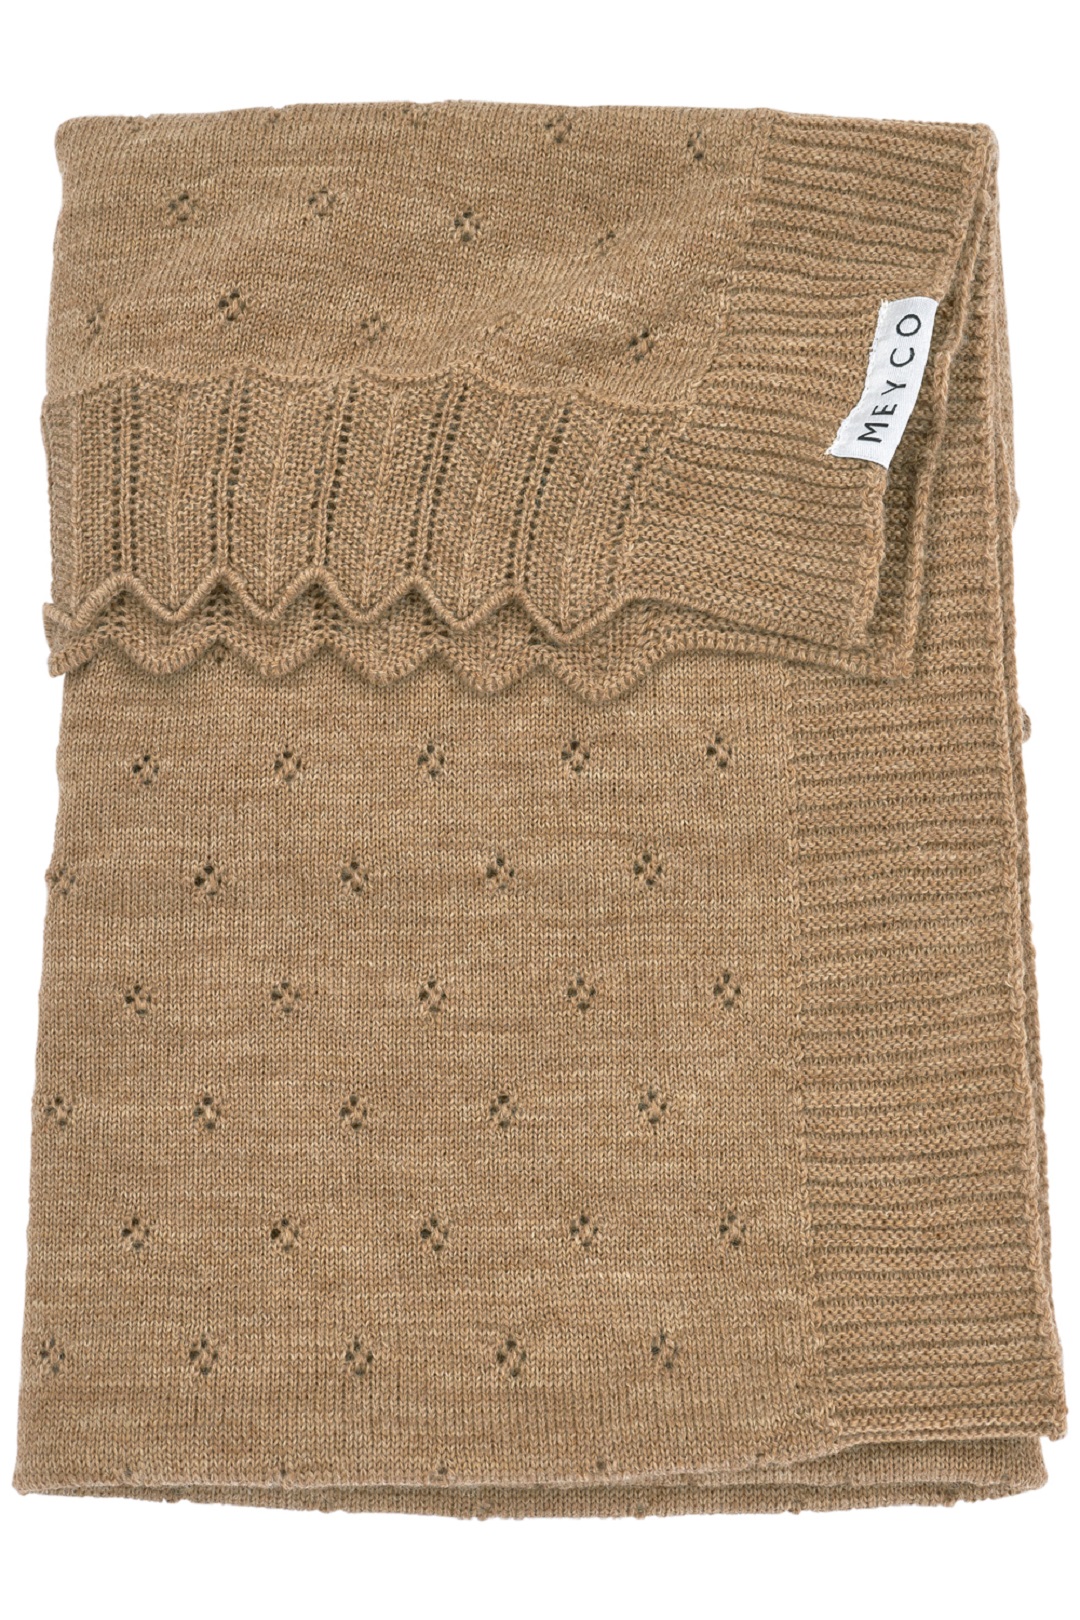 Meyco Cot Blanket Ajour Wool – 75×100 cm.